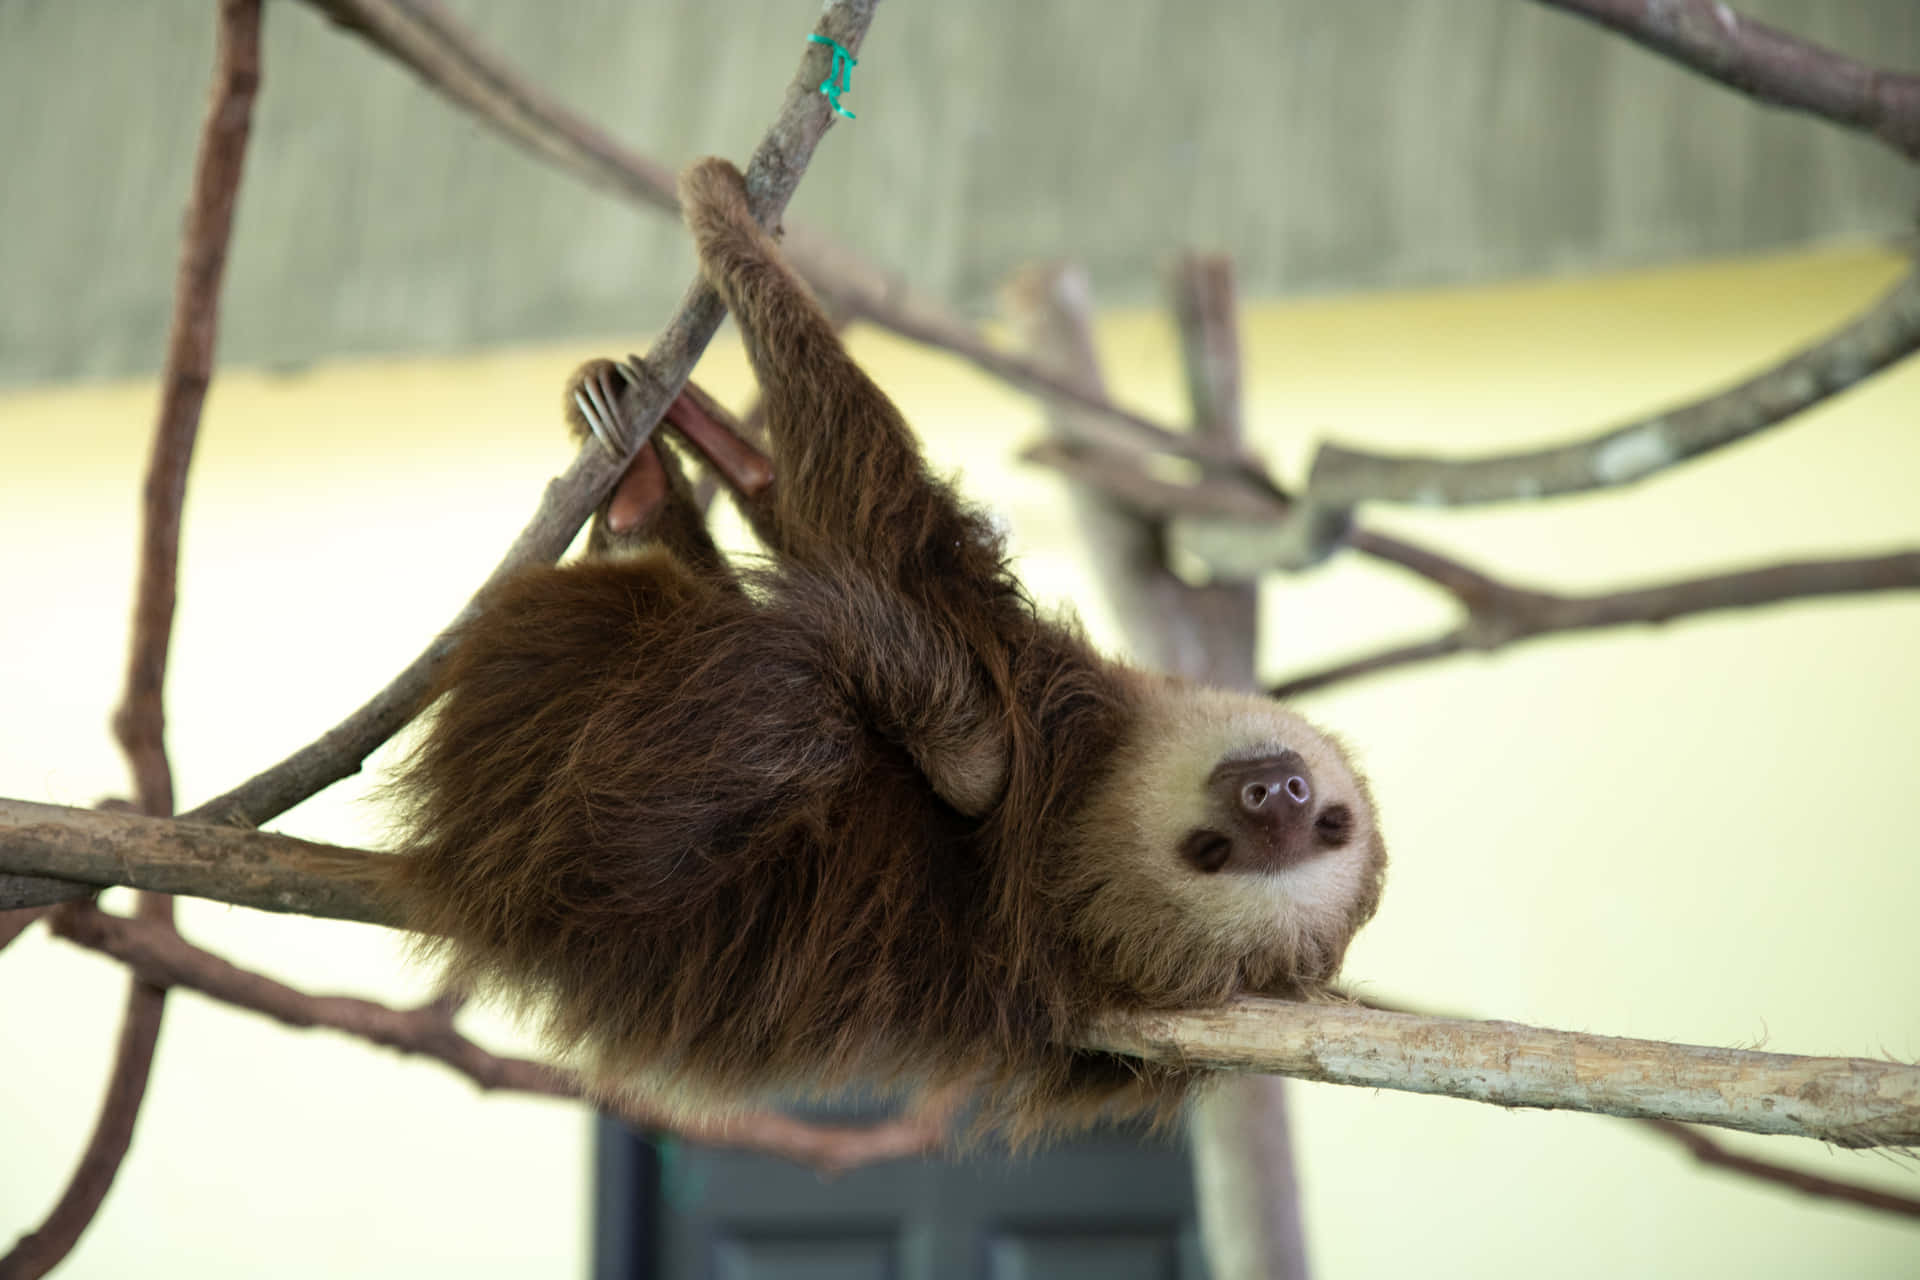 A sleepy sloth, enjoying a peaceful nap.